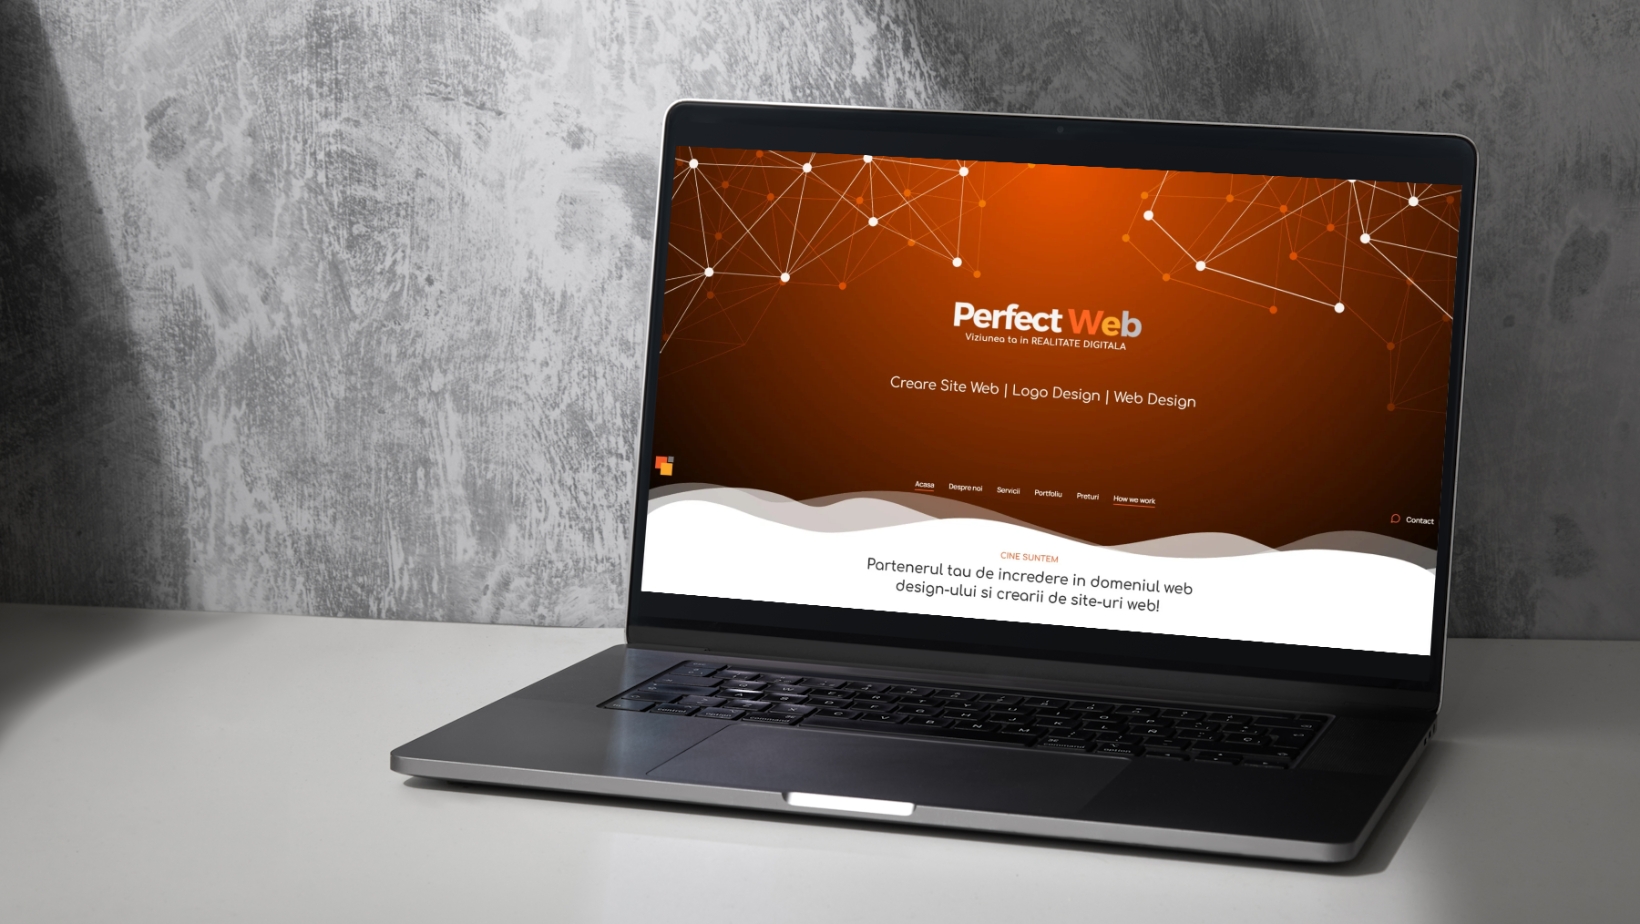 Site prezentare Perfect Web